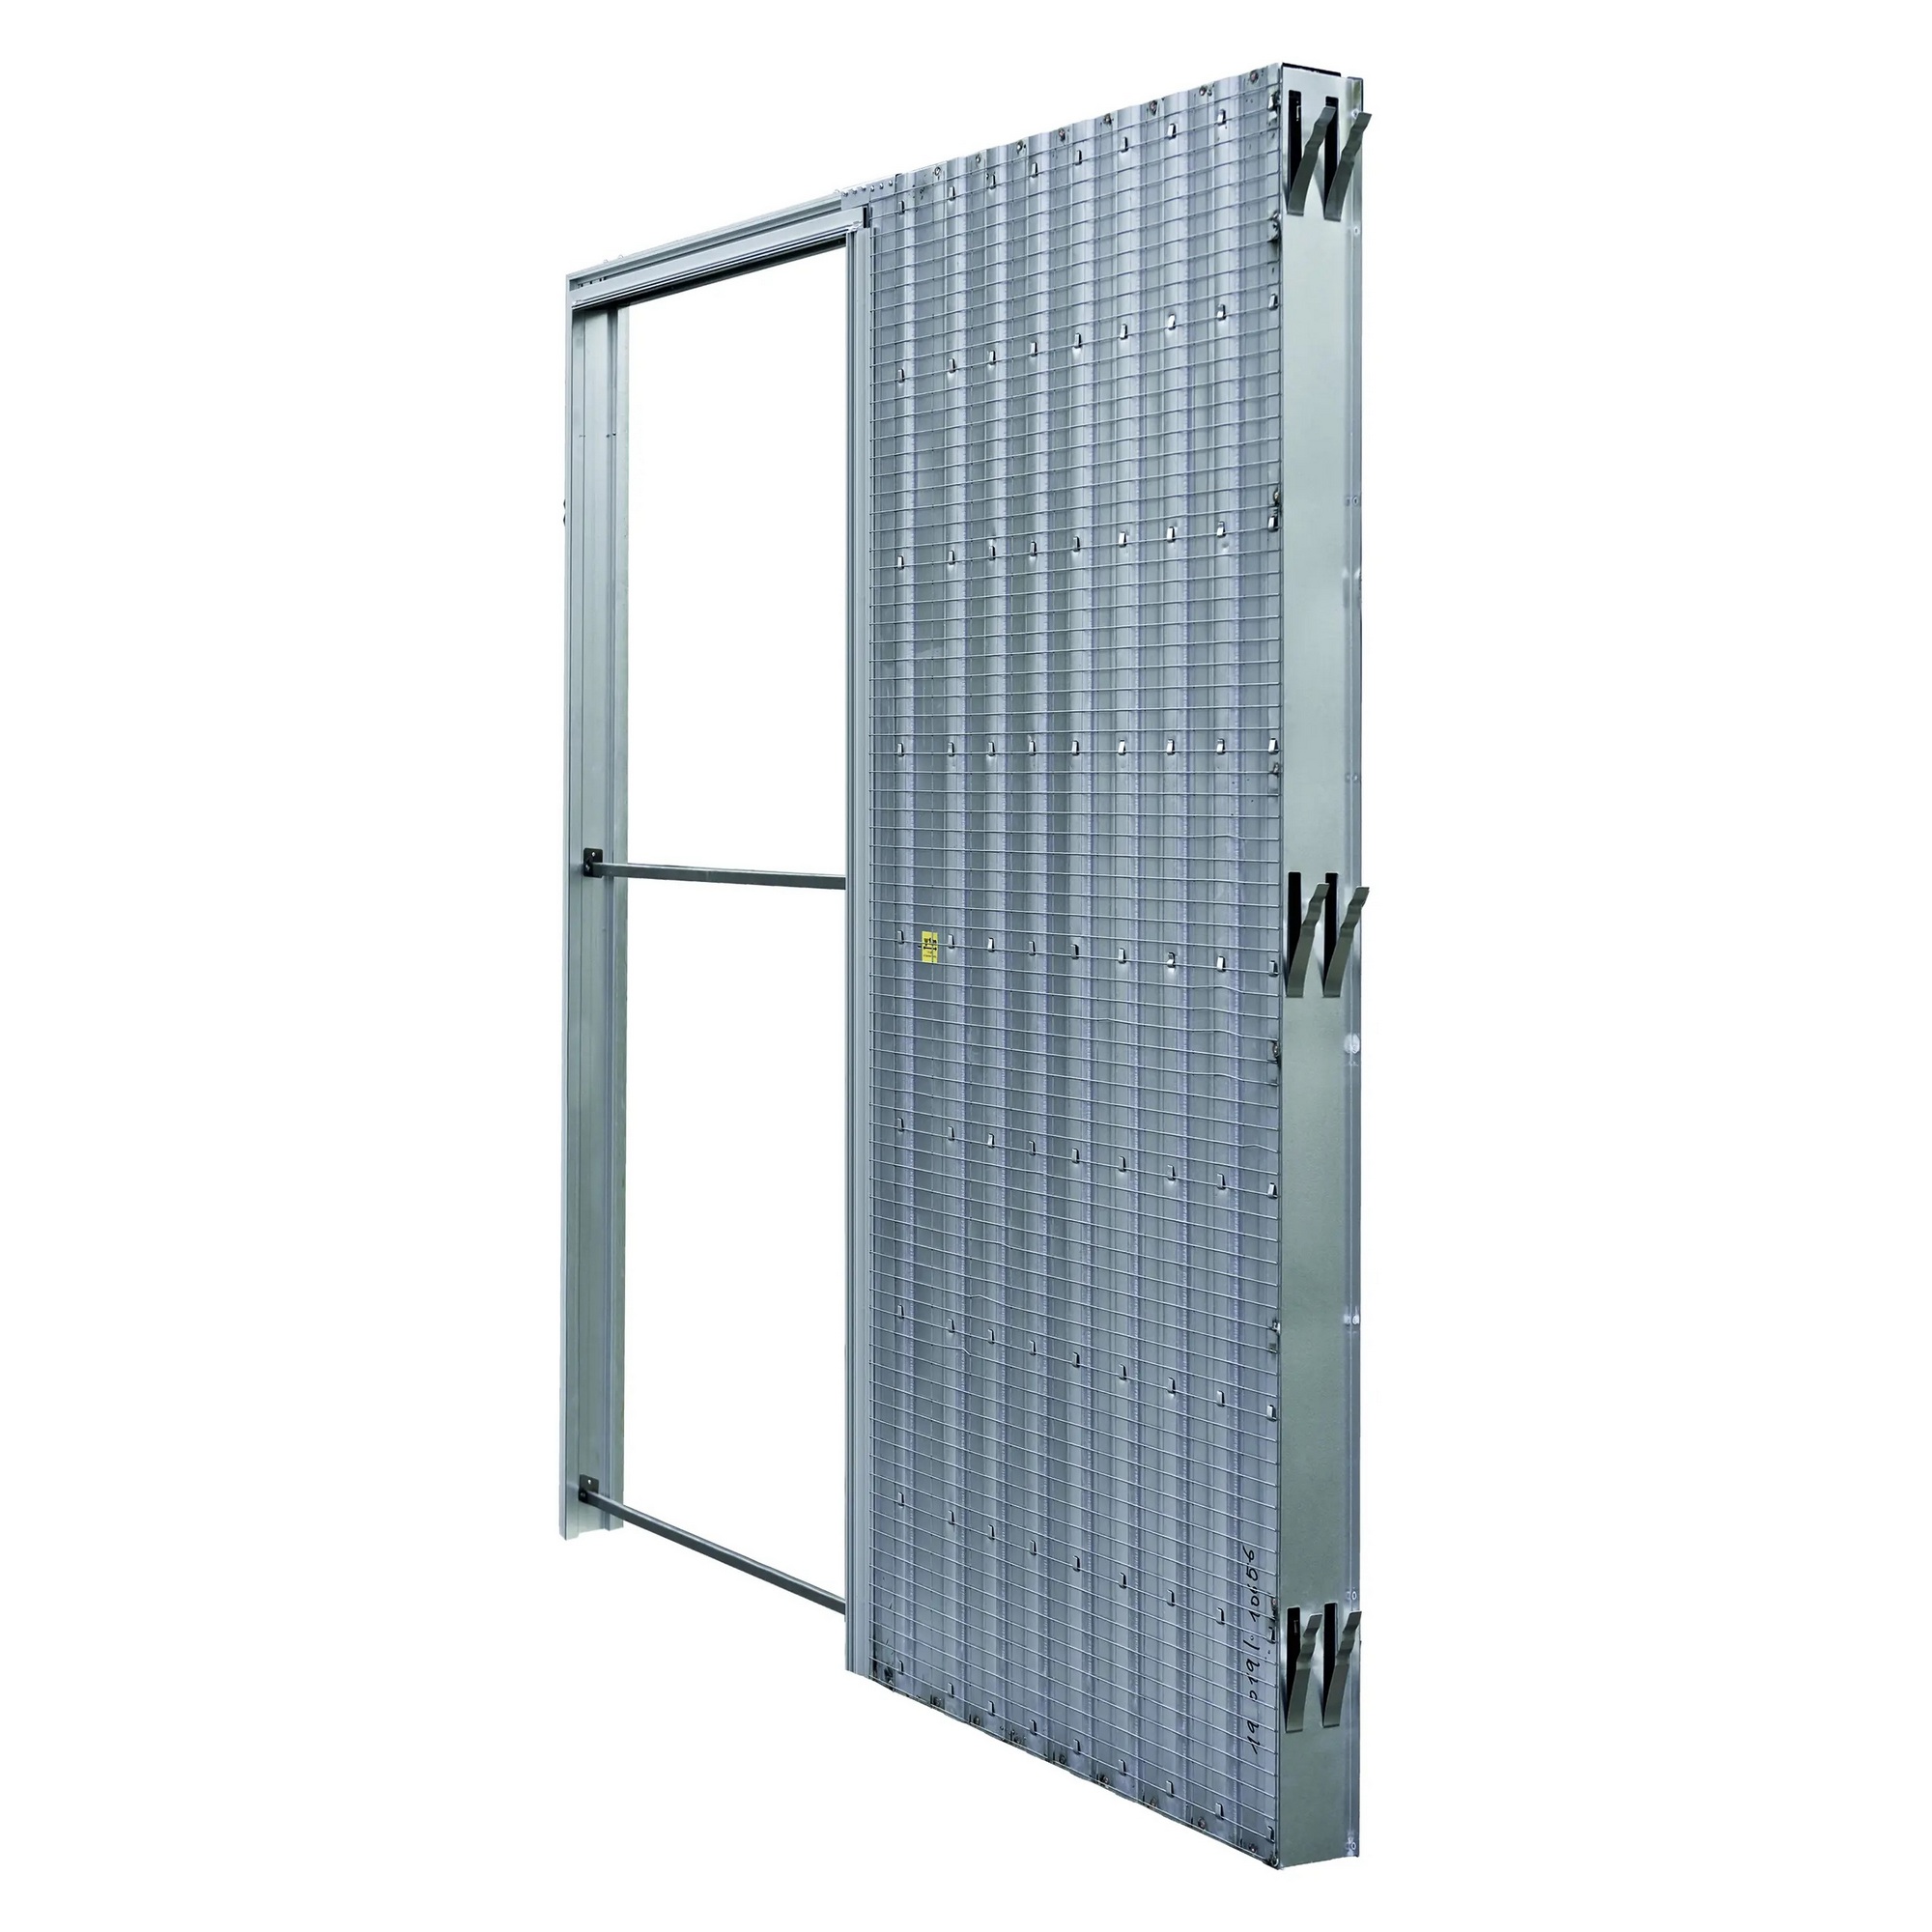 Pouzdro pro posuvné dveře JAP AKTIVE standard 600 mm do zdiva